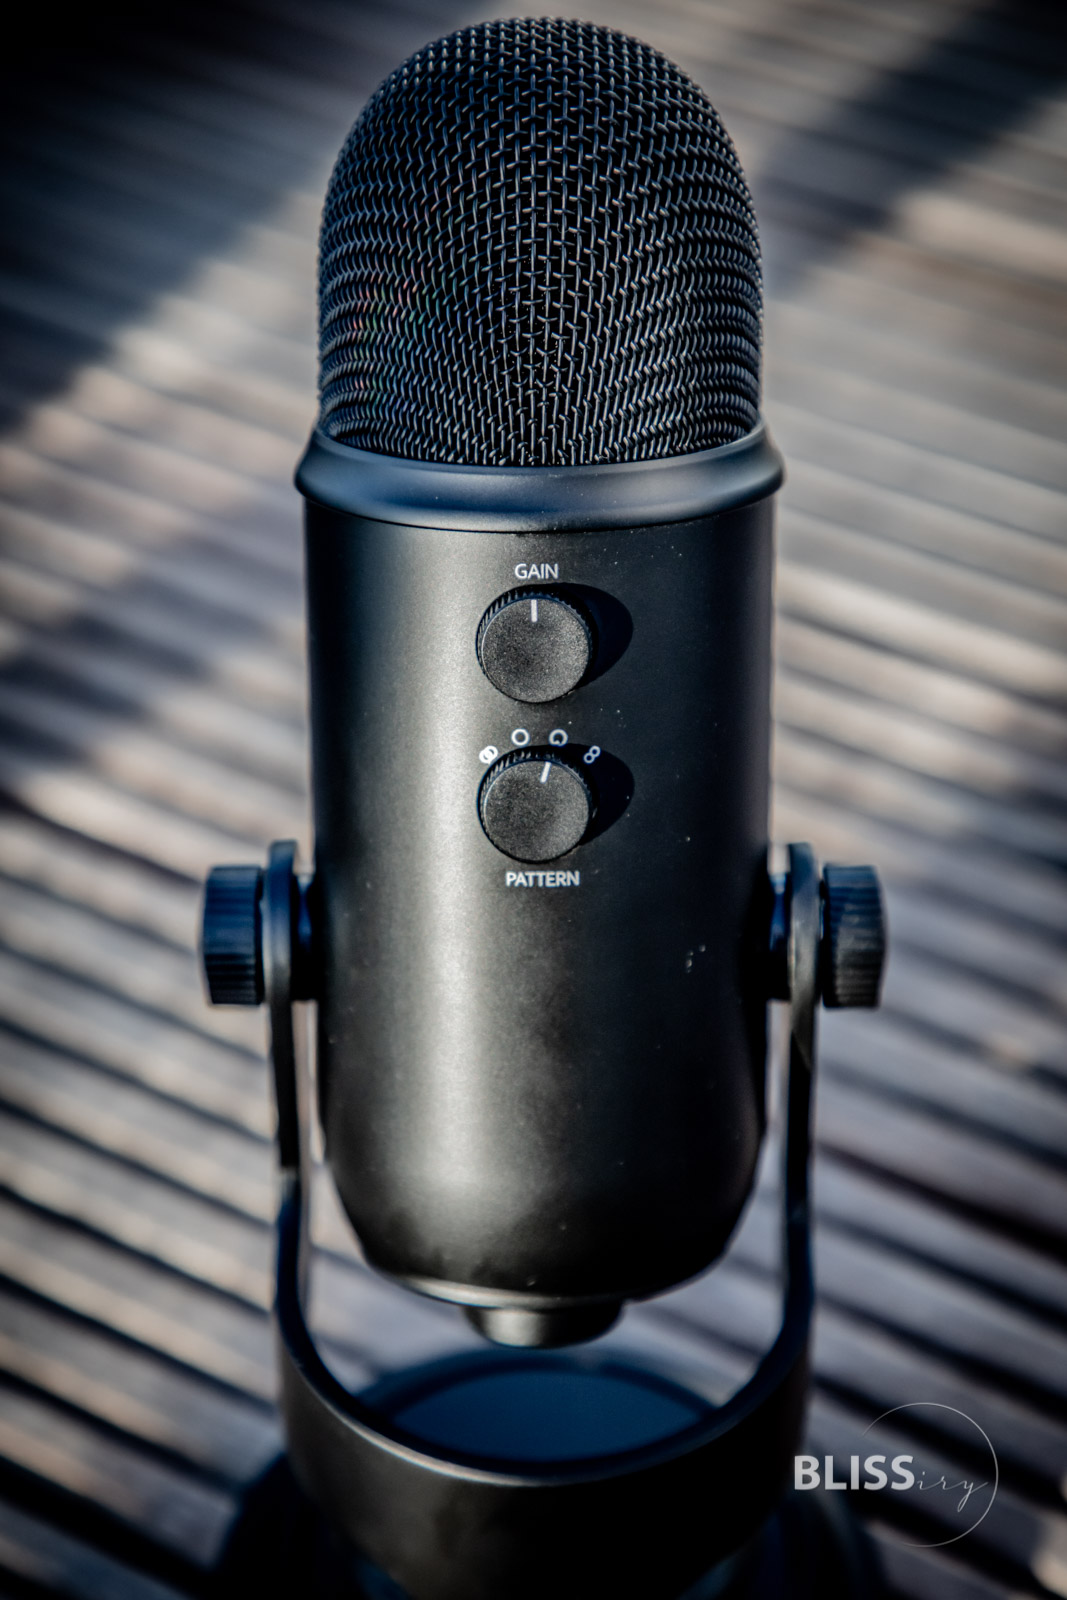 Blue Microphone Yeti USB Mikrofon für Podcasts und YouTube Videos - Podcast-Mikrofon mit USB Anschluss - Bewertung und Produkttest